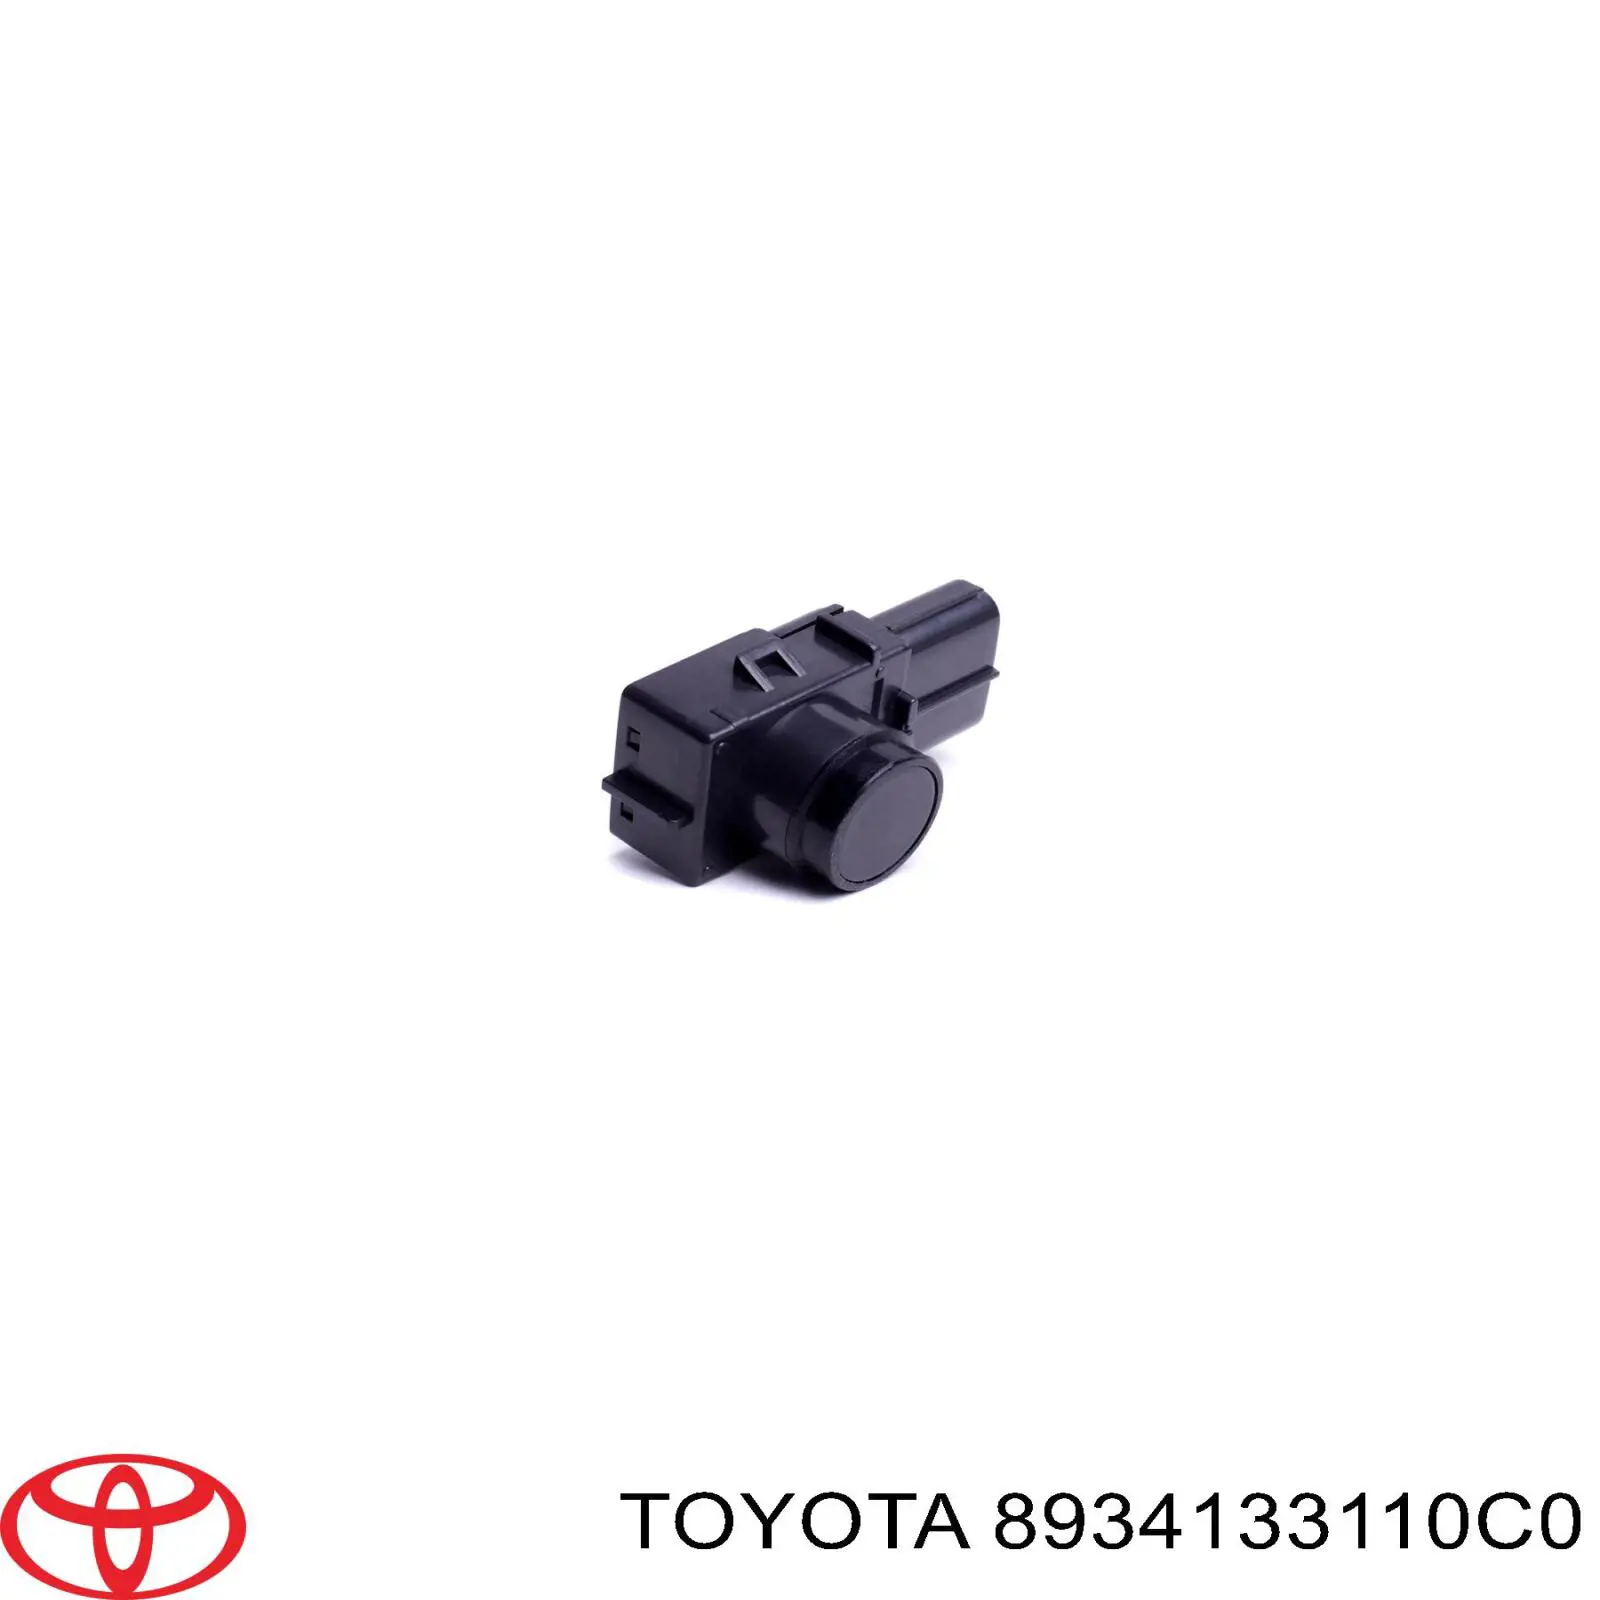 8934133110C0 Toyota датчик сигнализации парковки (парктроник передний/задний центральный)